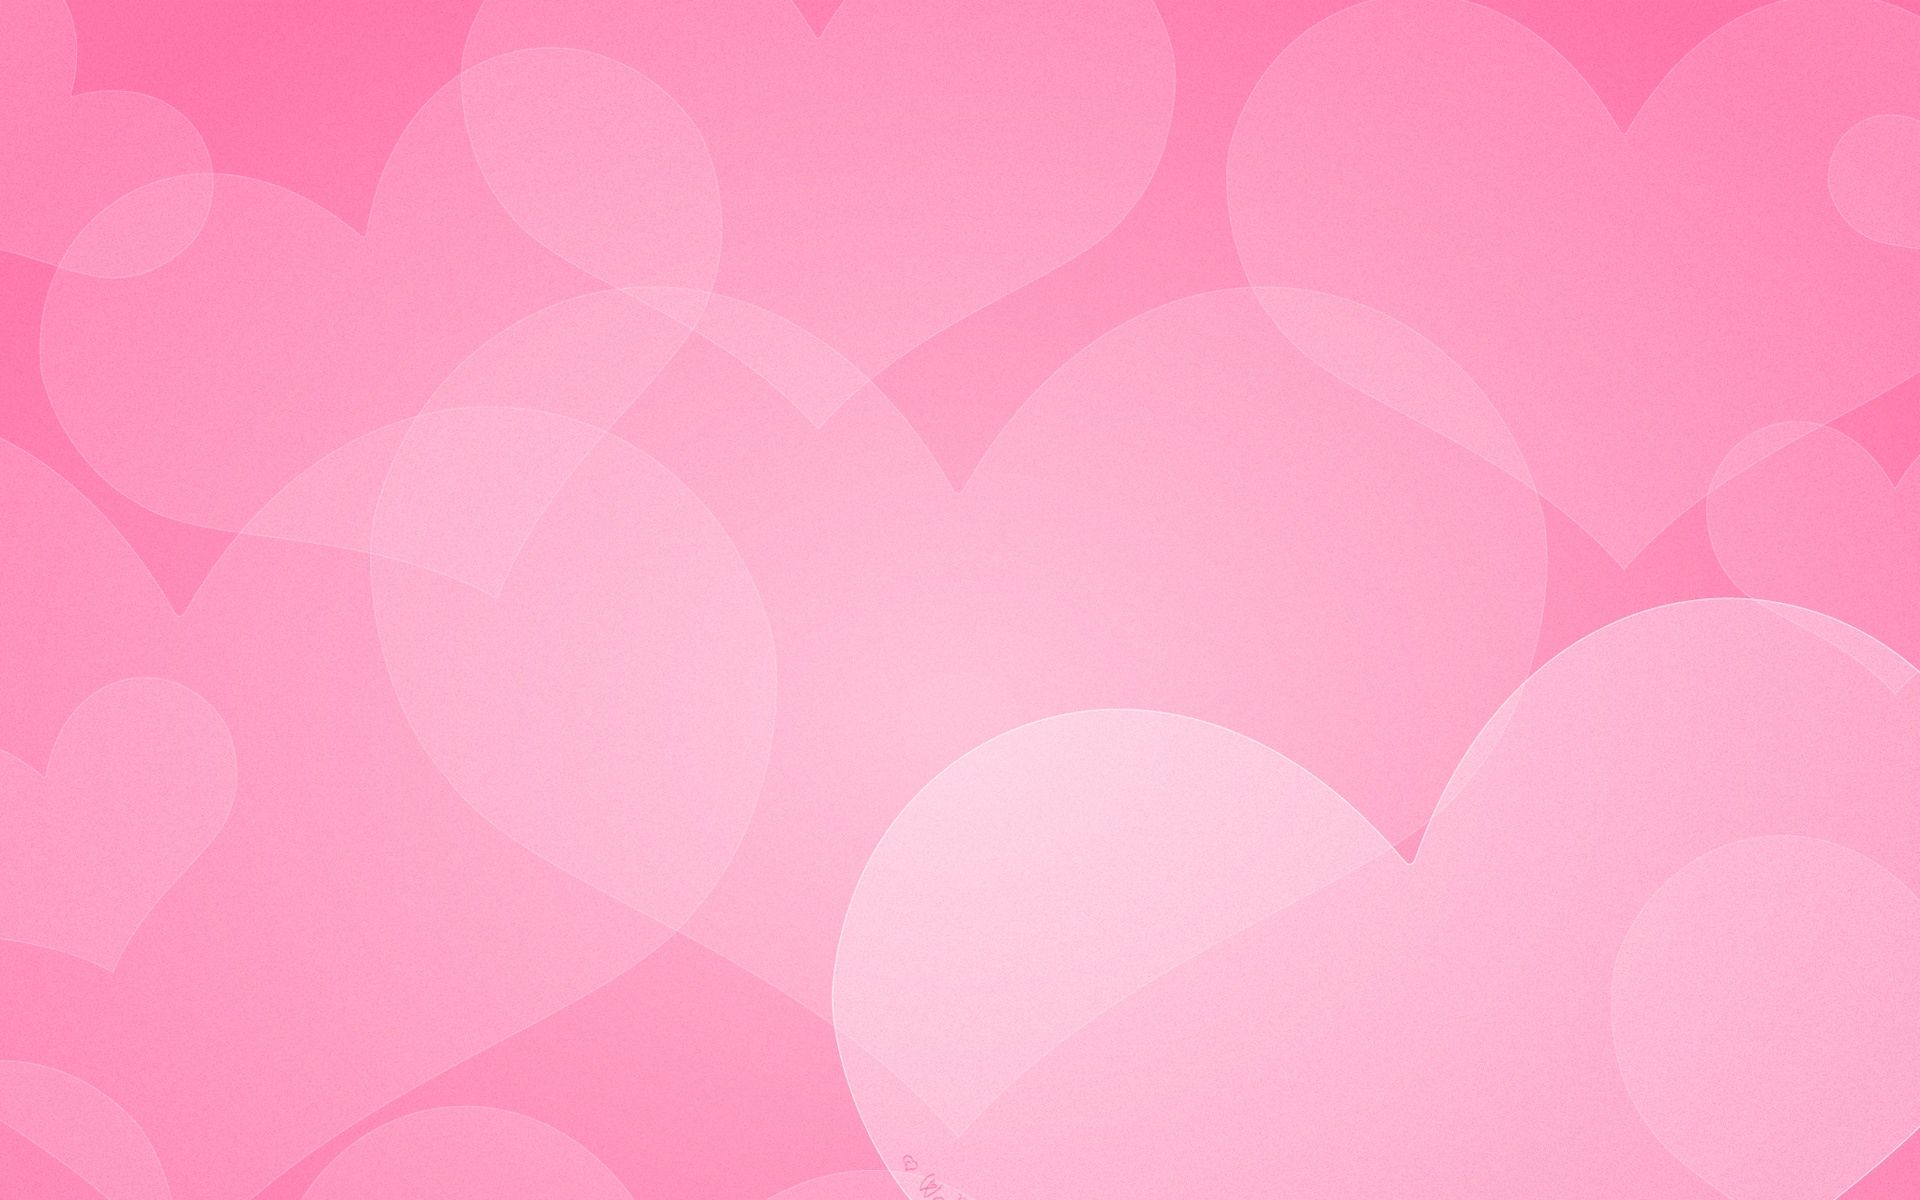 Pink Hearts Wallpaper. Wallpaper 2014. Heart wallpaper, Pink wallpaper heart, Heart wallpaper hd